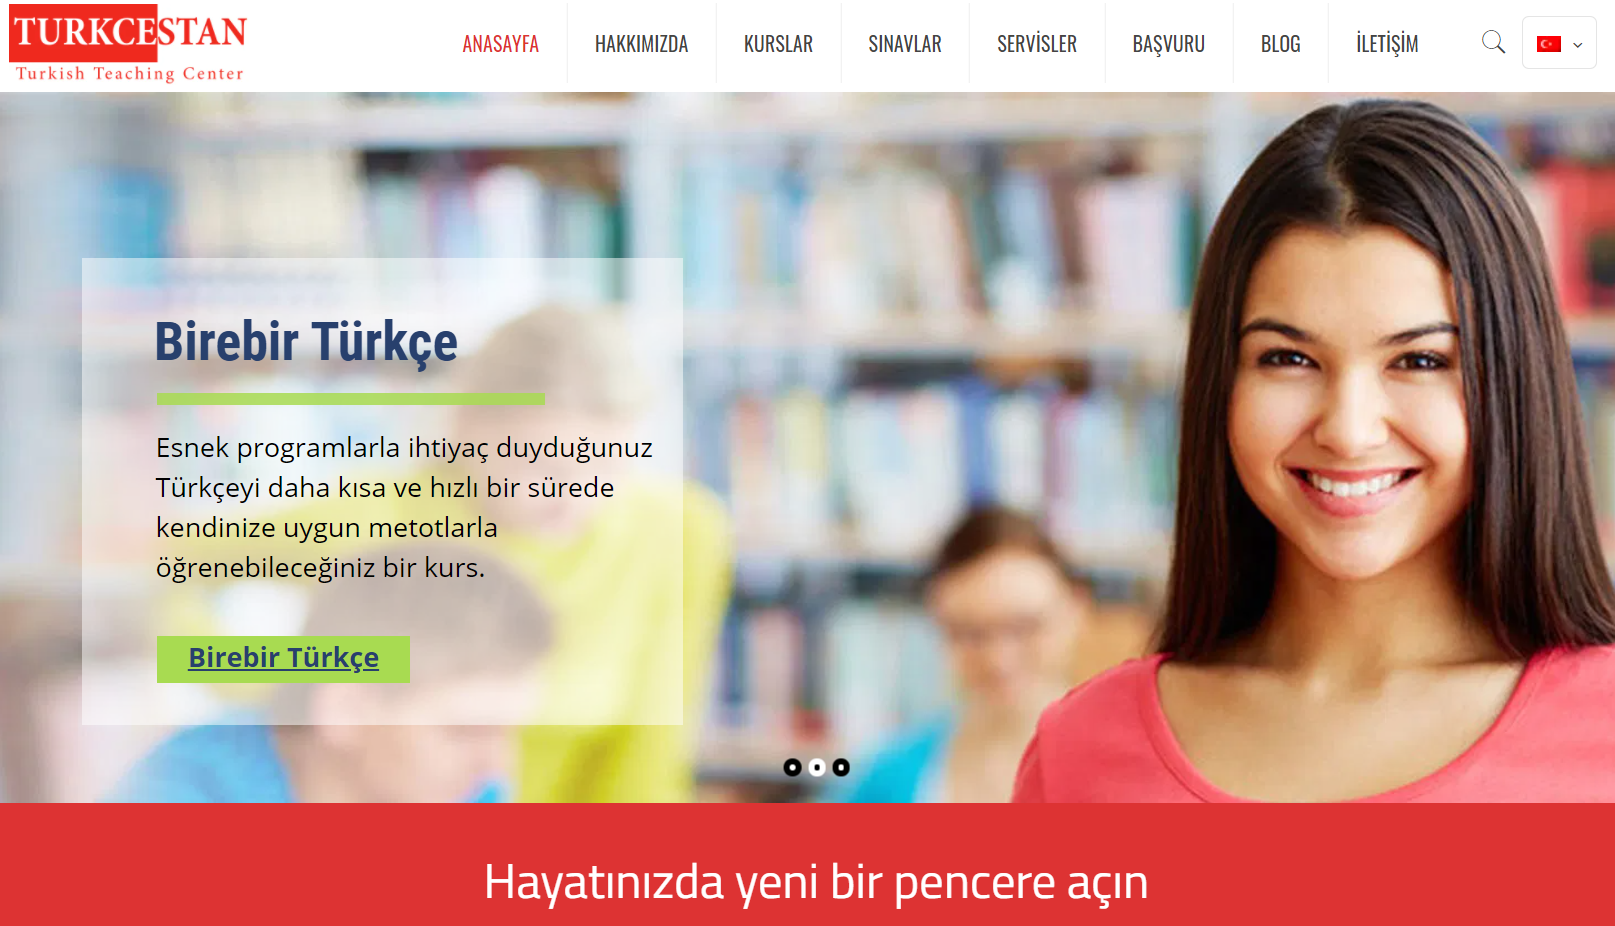 Türkçestan – Türkçe Öğretim Merkezi